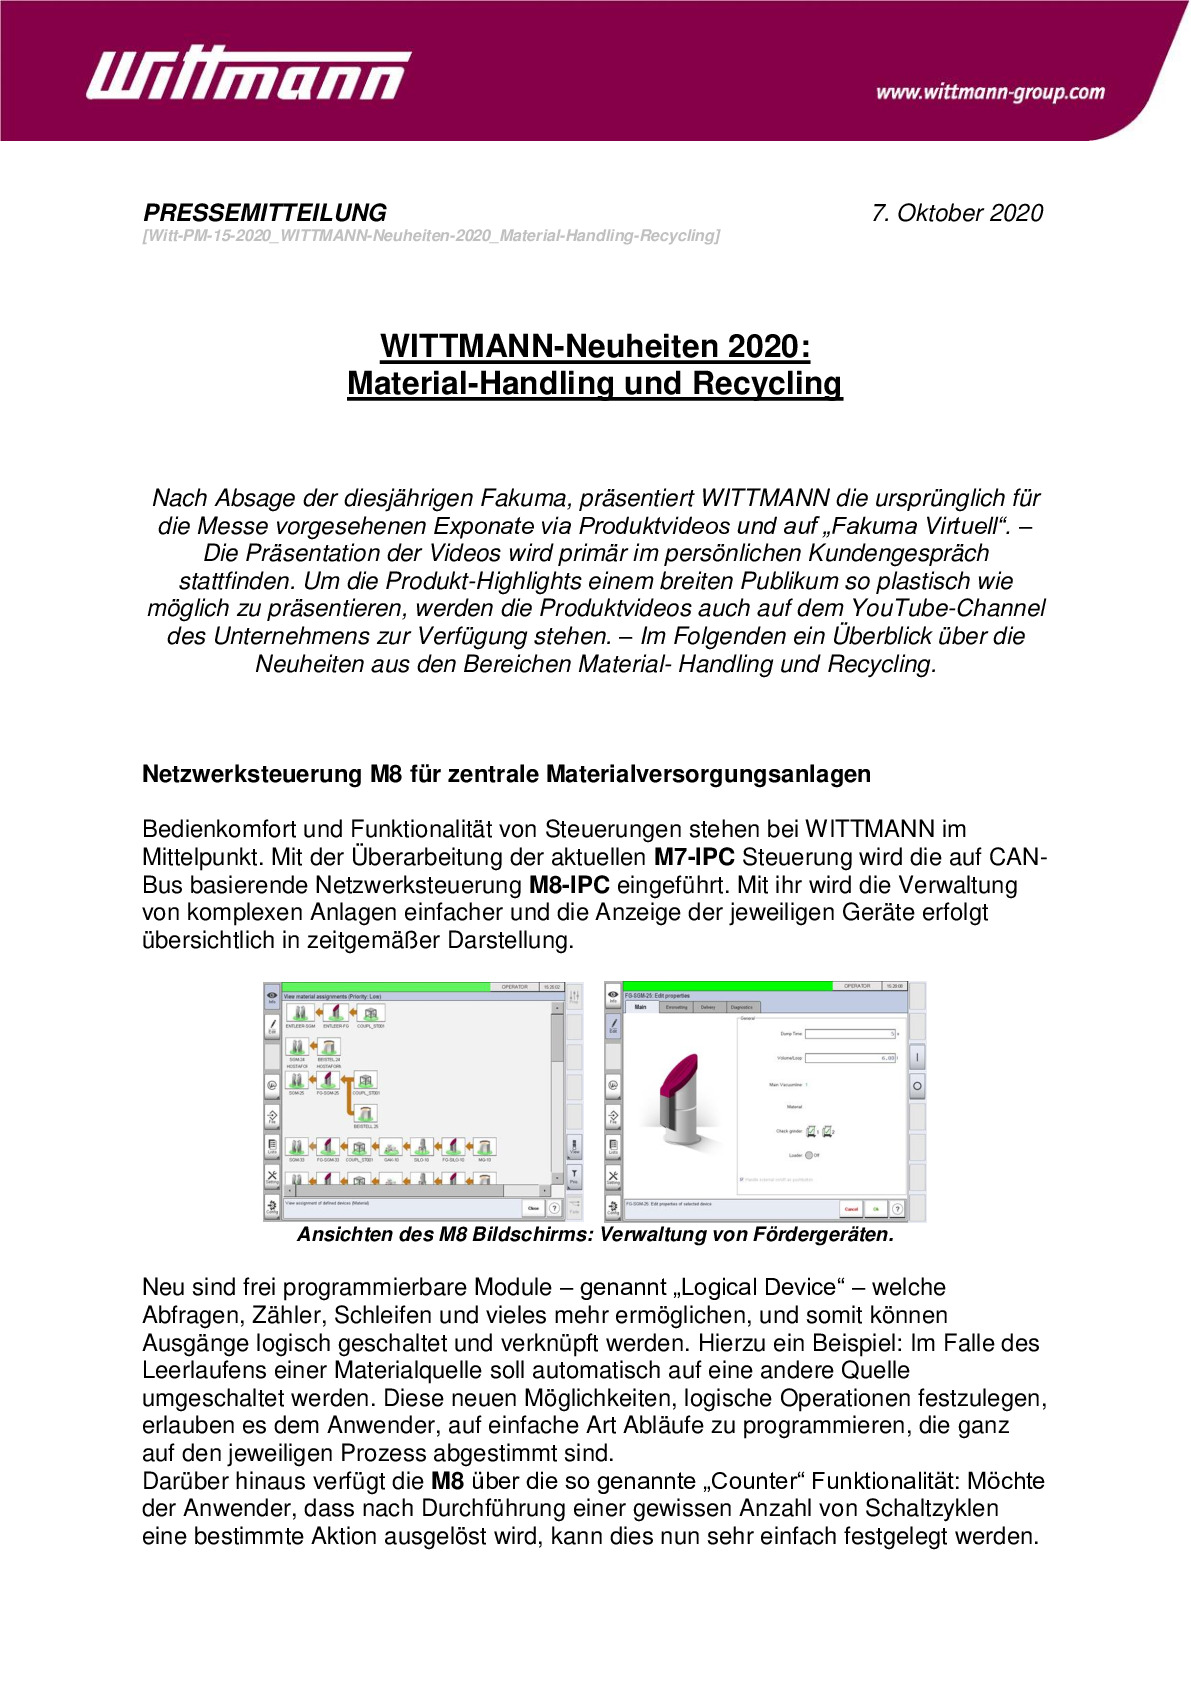 witt-pm-15-2020_wittmann-neuheiten-2020_material-handling-recycling